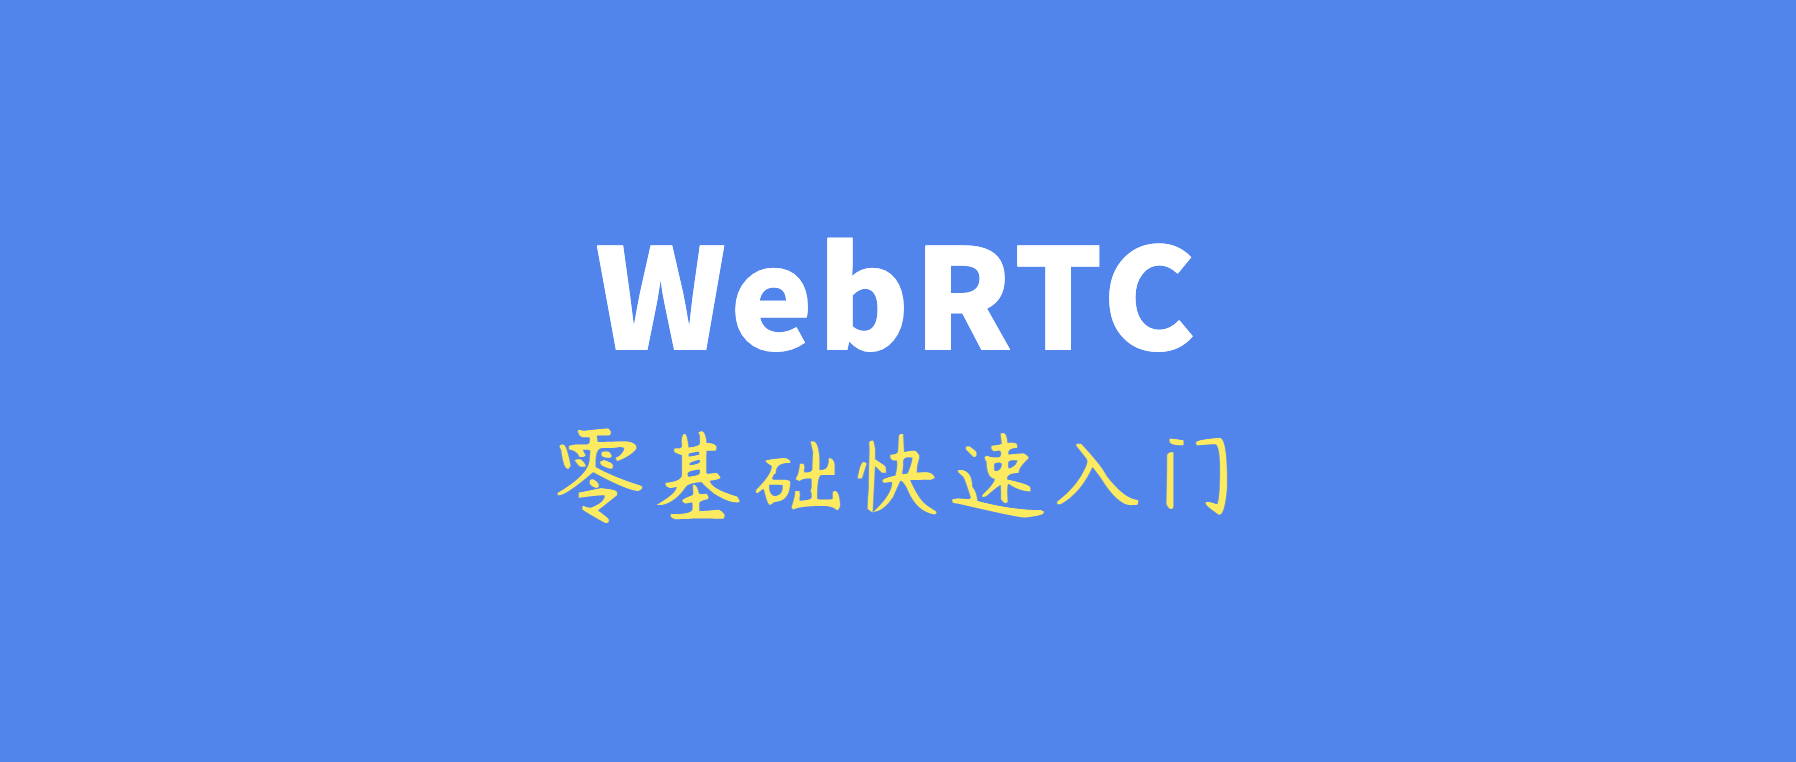 零基础快速入门WebRTC：基本概念、关键技术、与WebSocket的区别等